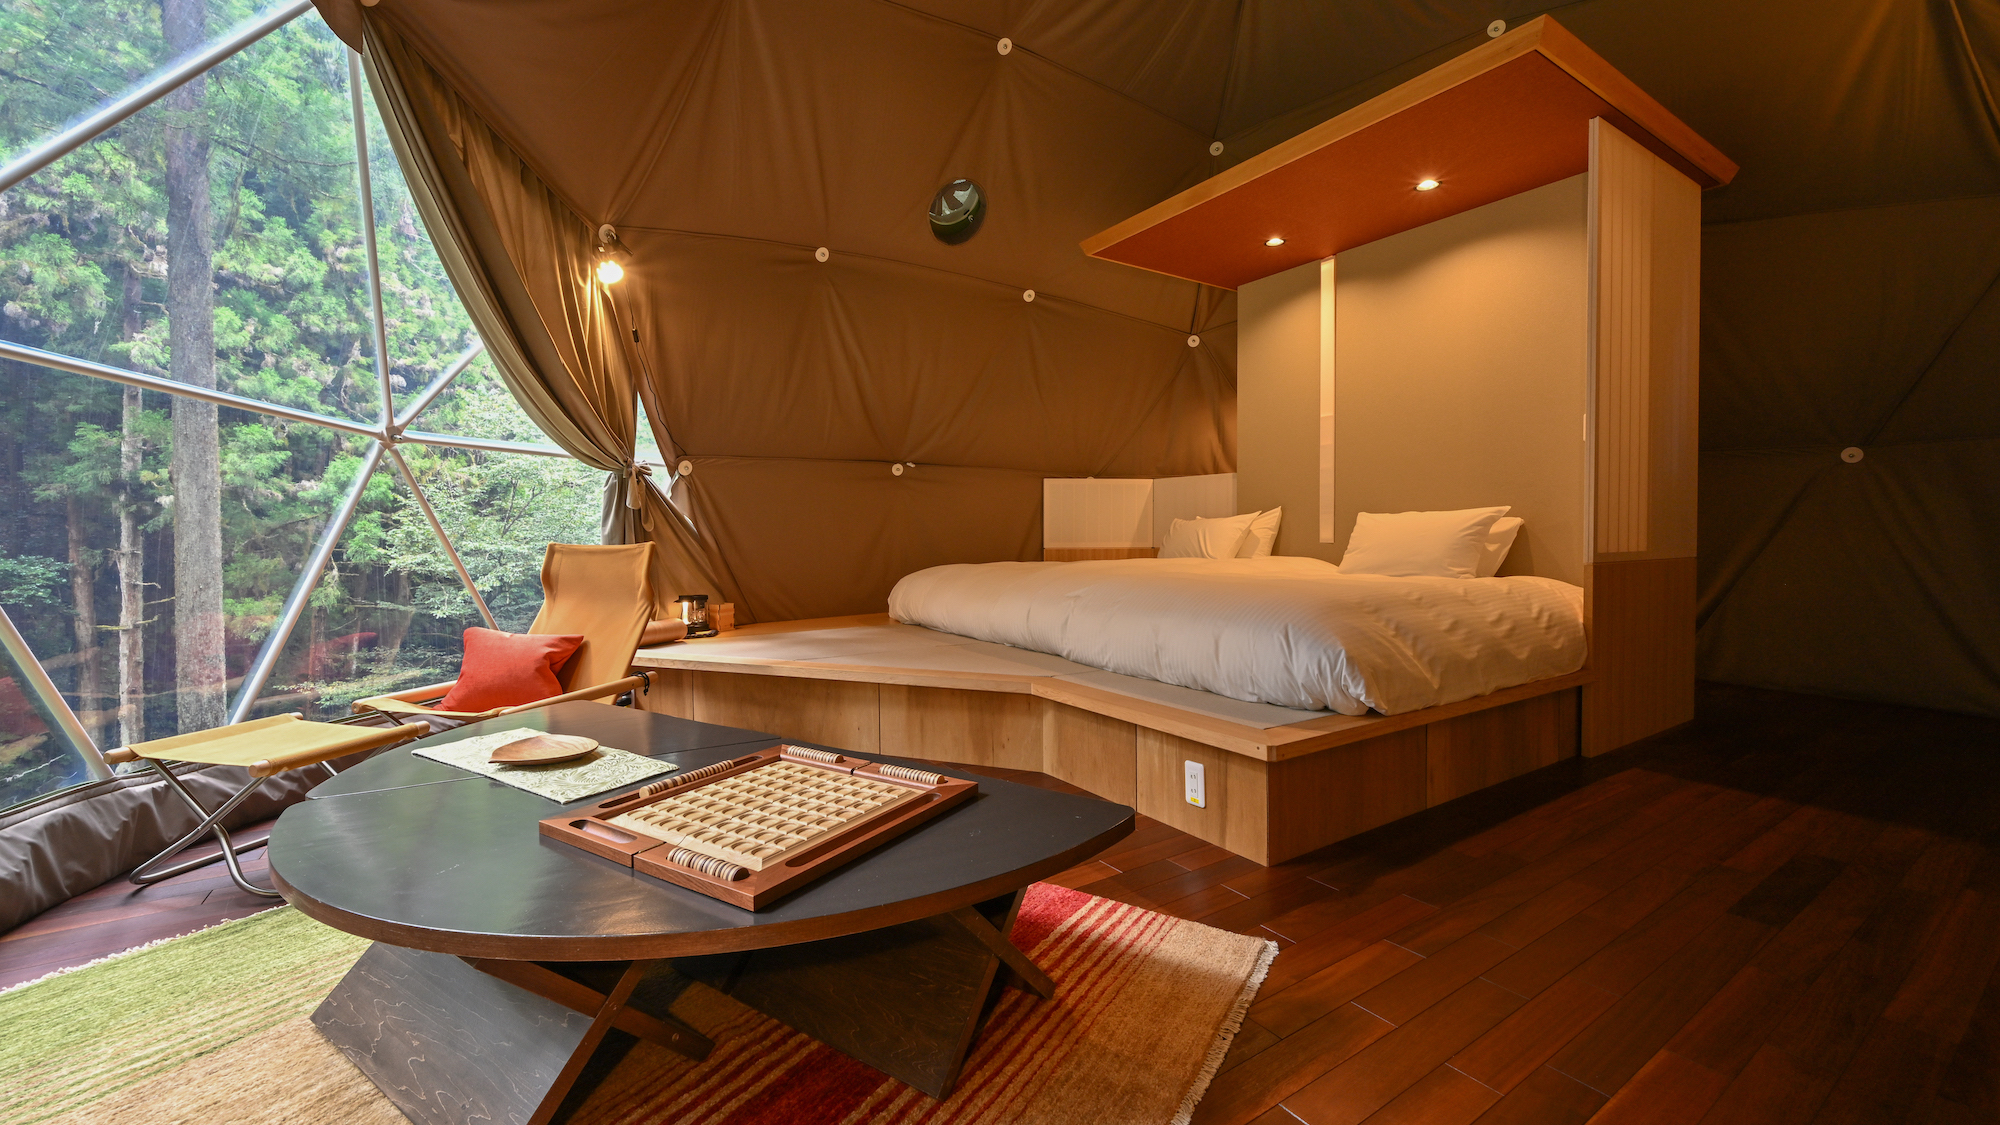 天空の森のグランピング「オオルリ」一棟貸切のおしゃれなドームテントのグランピング施設です。